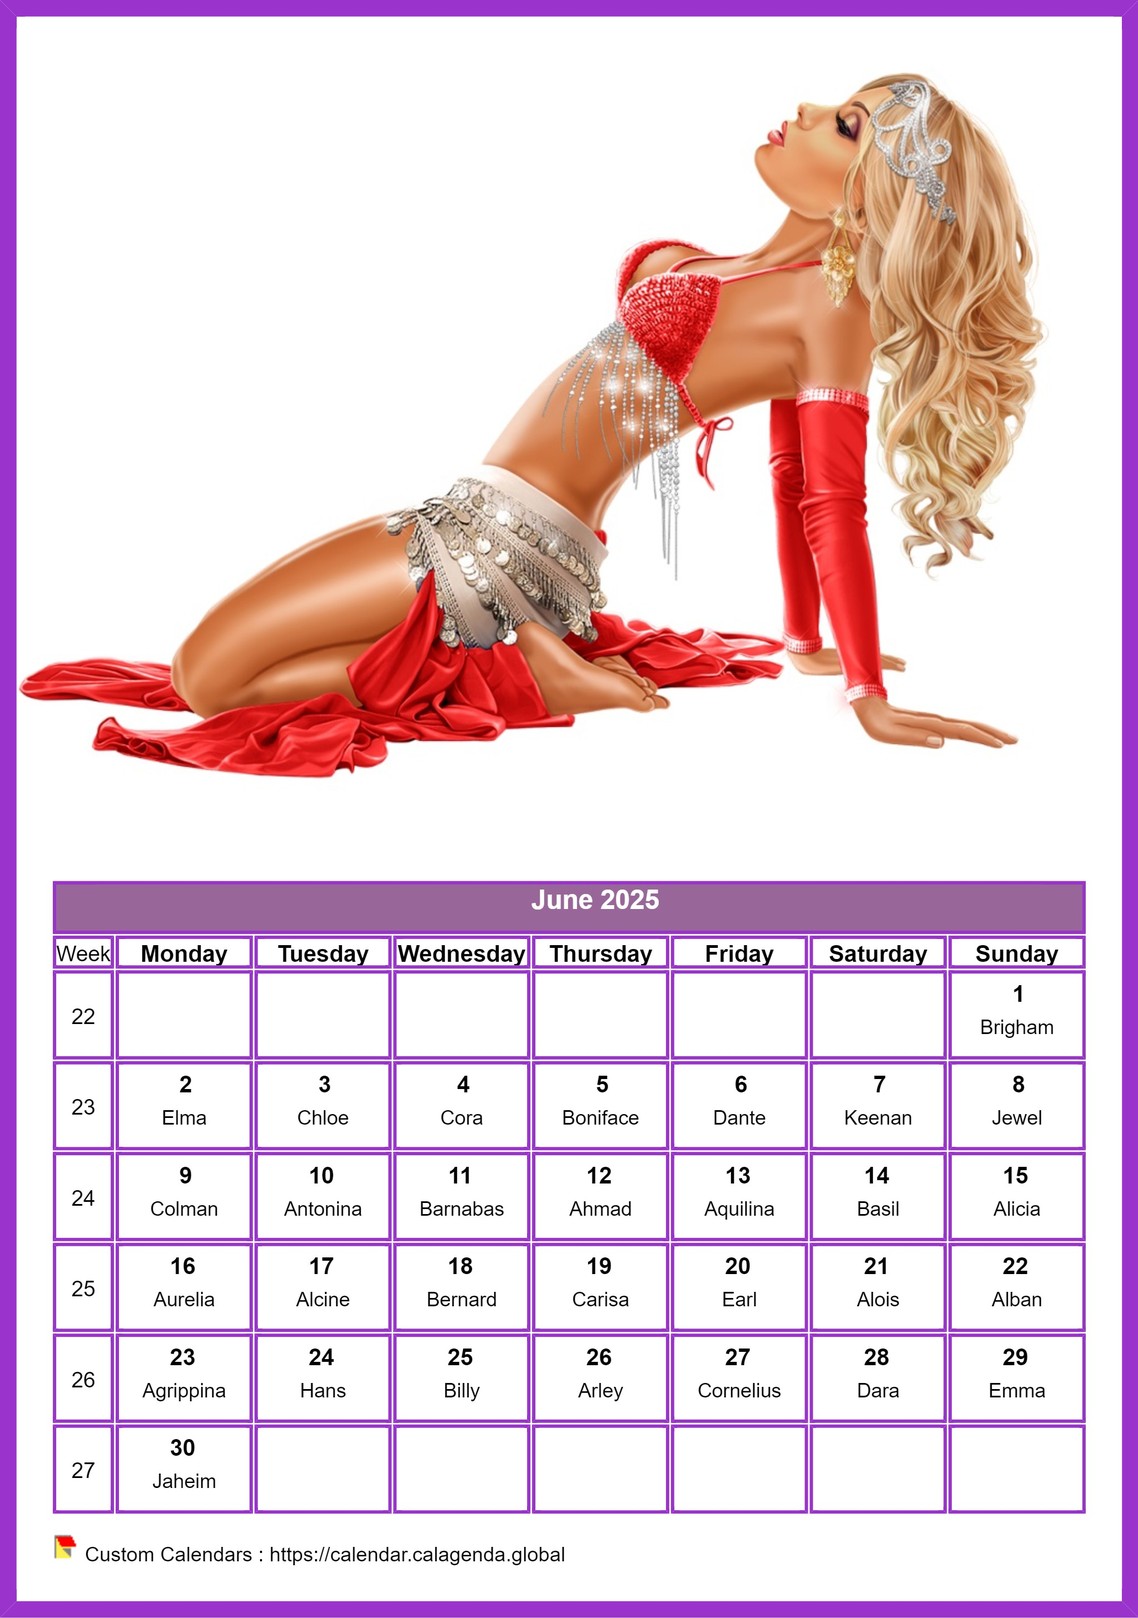 Calendar June 2025 women